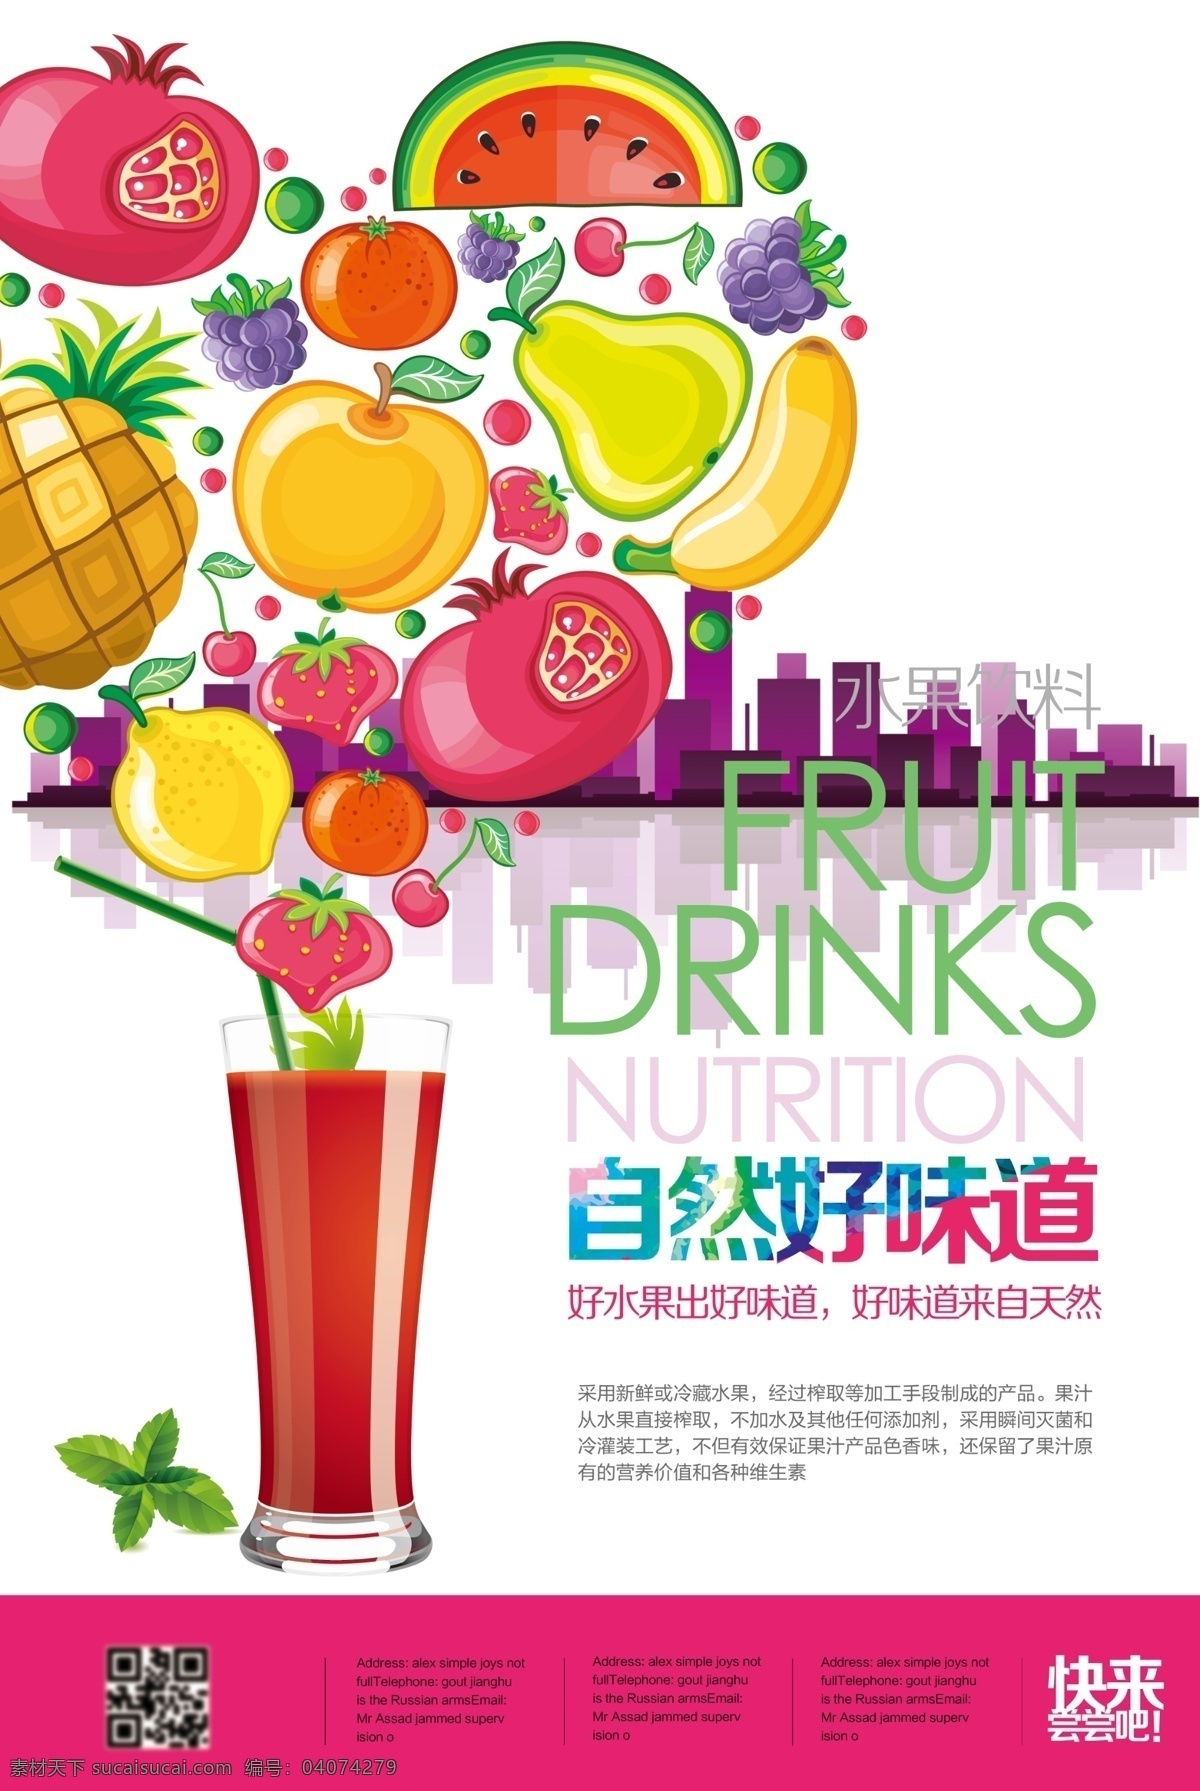 果汁饮料 宣传海报 水果 饮料 美味果汁海报 橙子 桔子 柠檬 芒果 饮料广告设计 创意 平面广告 欣赏 2016 广告